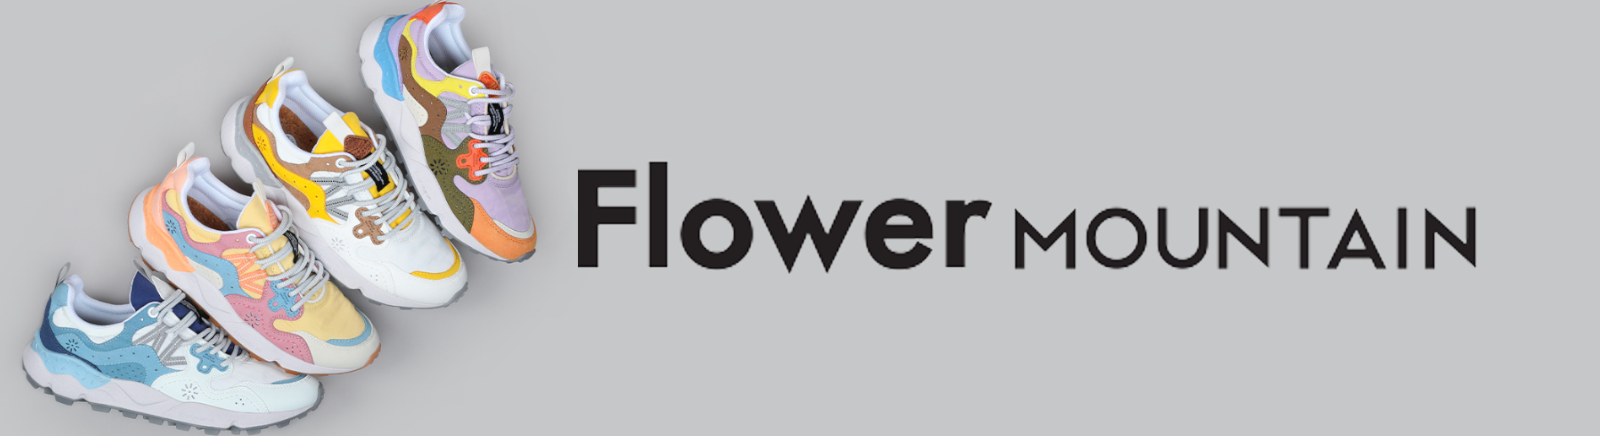 Flower Mountain Herrenschuhe online bestellen bei GISY Schuhe